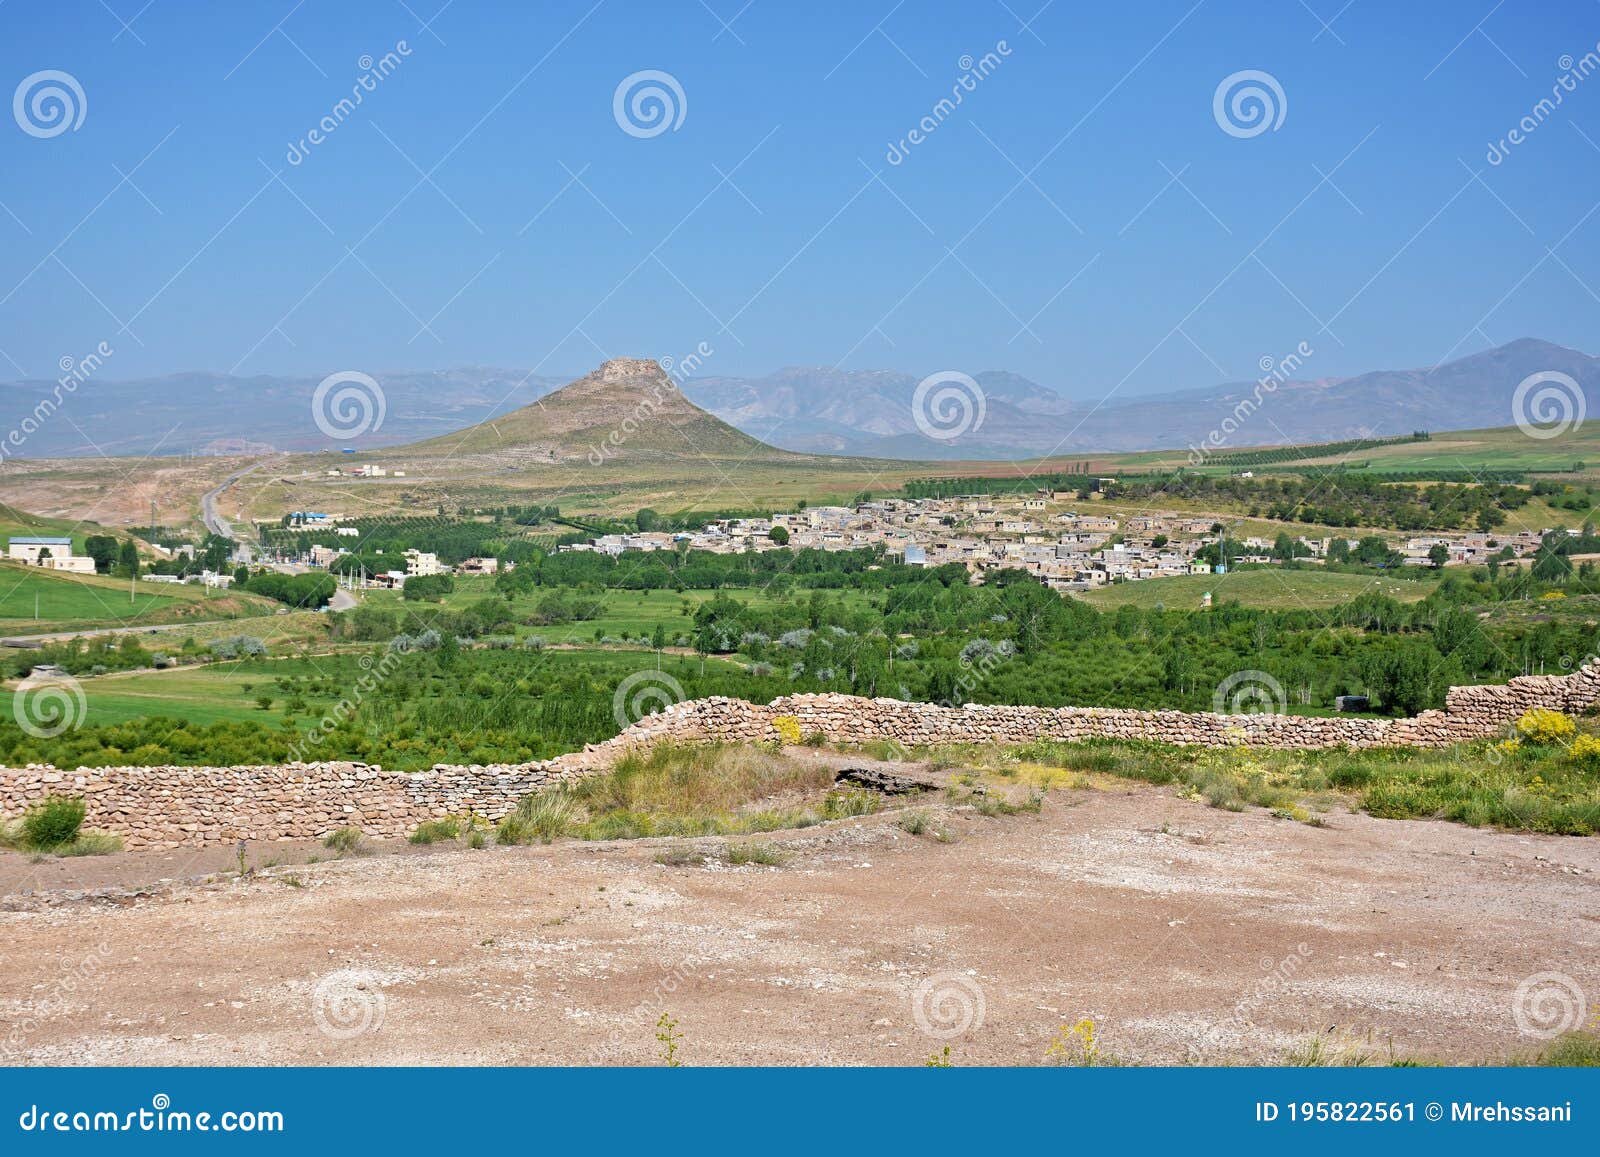 zendan-e soleyman , prison of solomon peak in takab